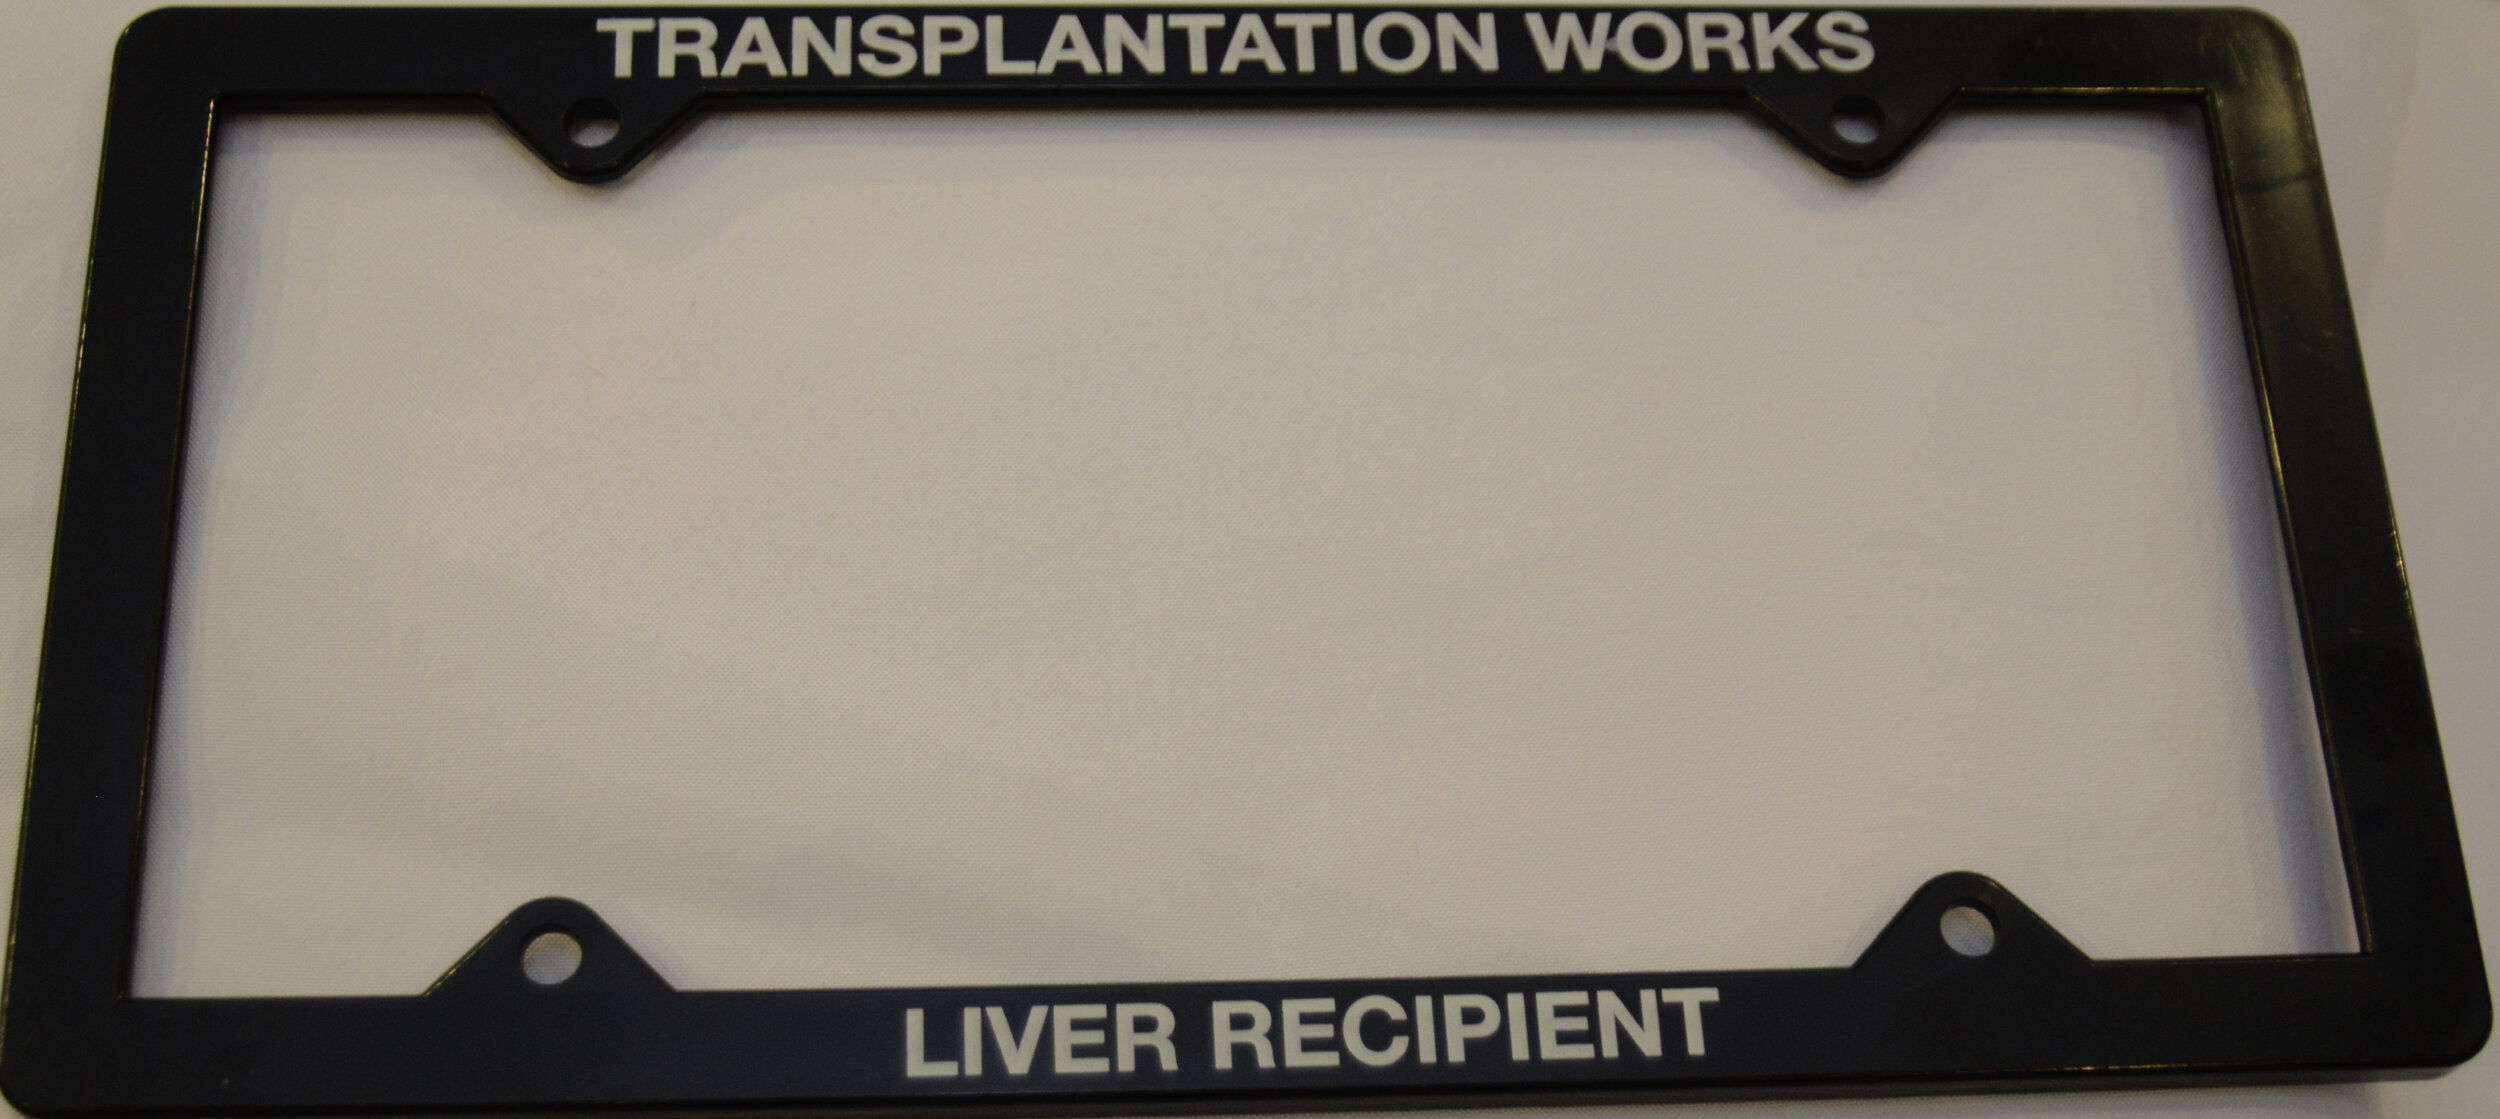 Transplantation Works Liver Recipient License Plate Frame Organ Transplant Support Inc